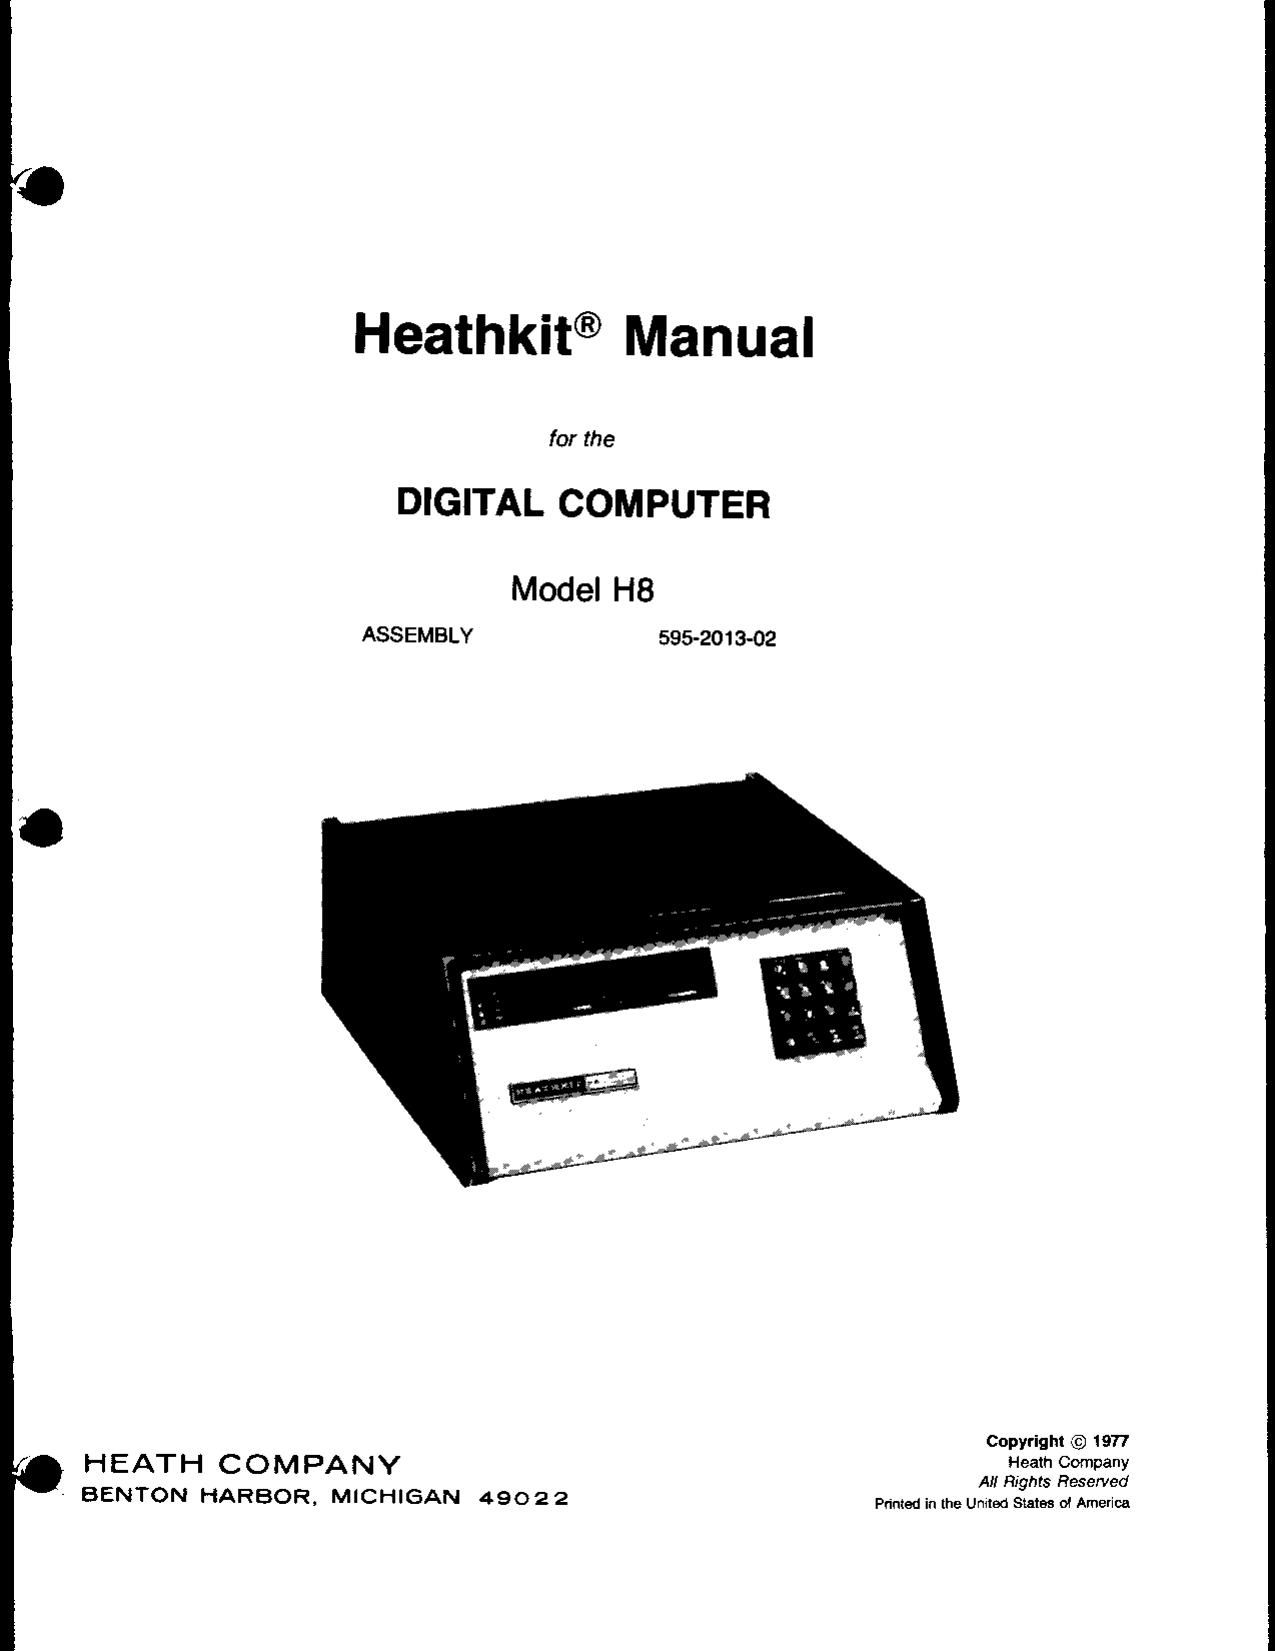 Heathkit H 8 Manual